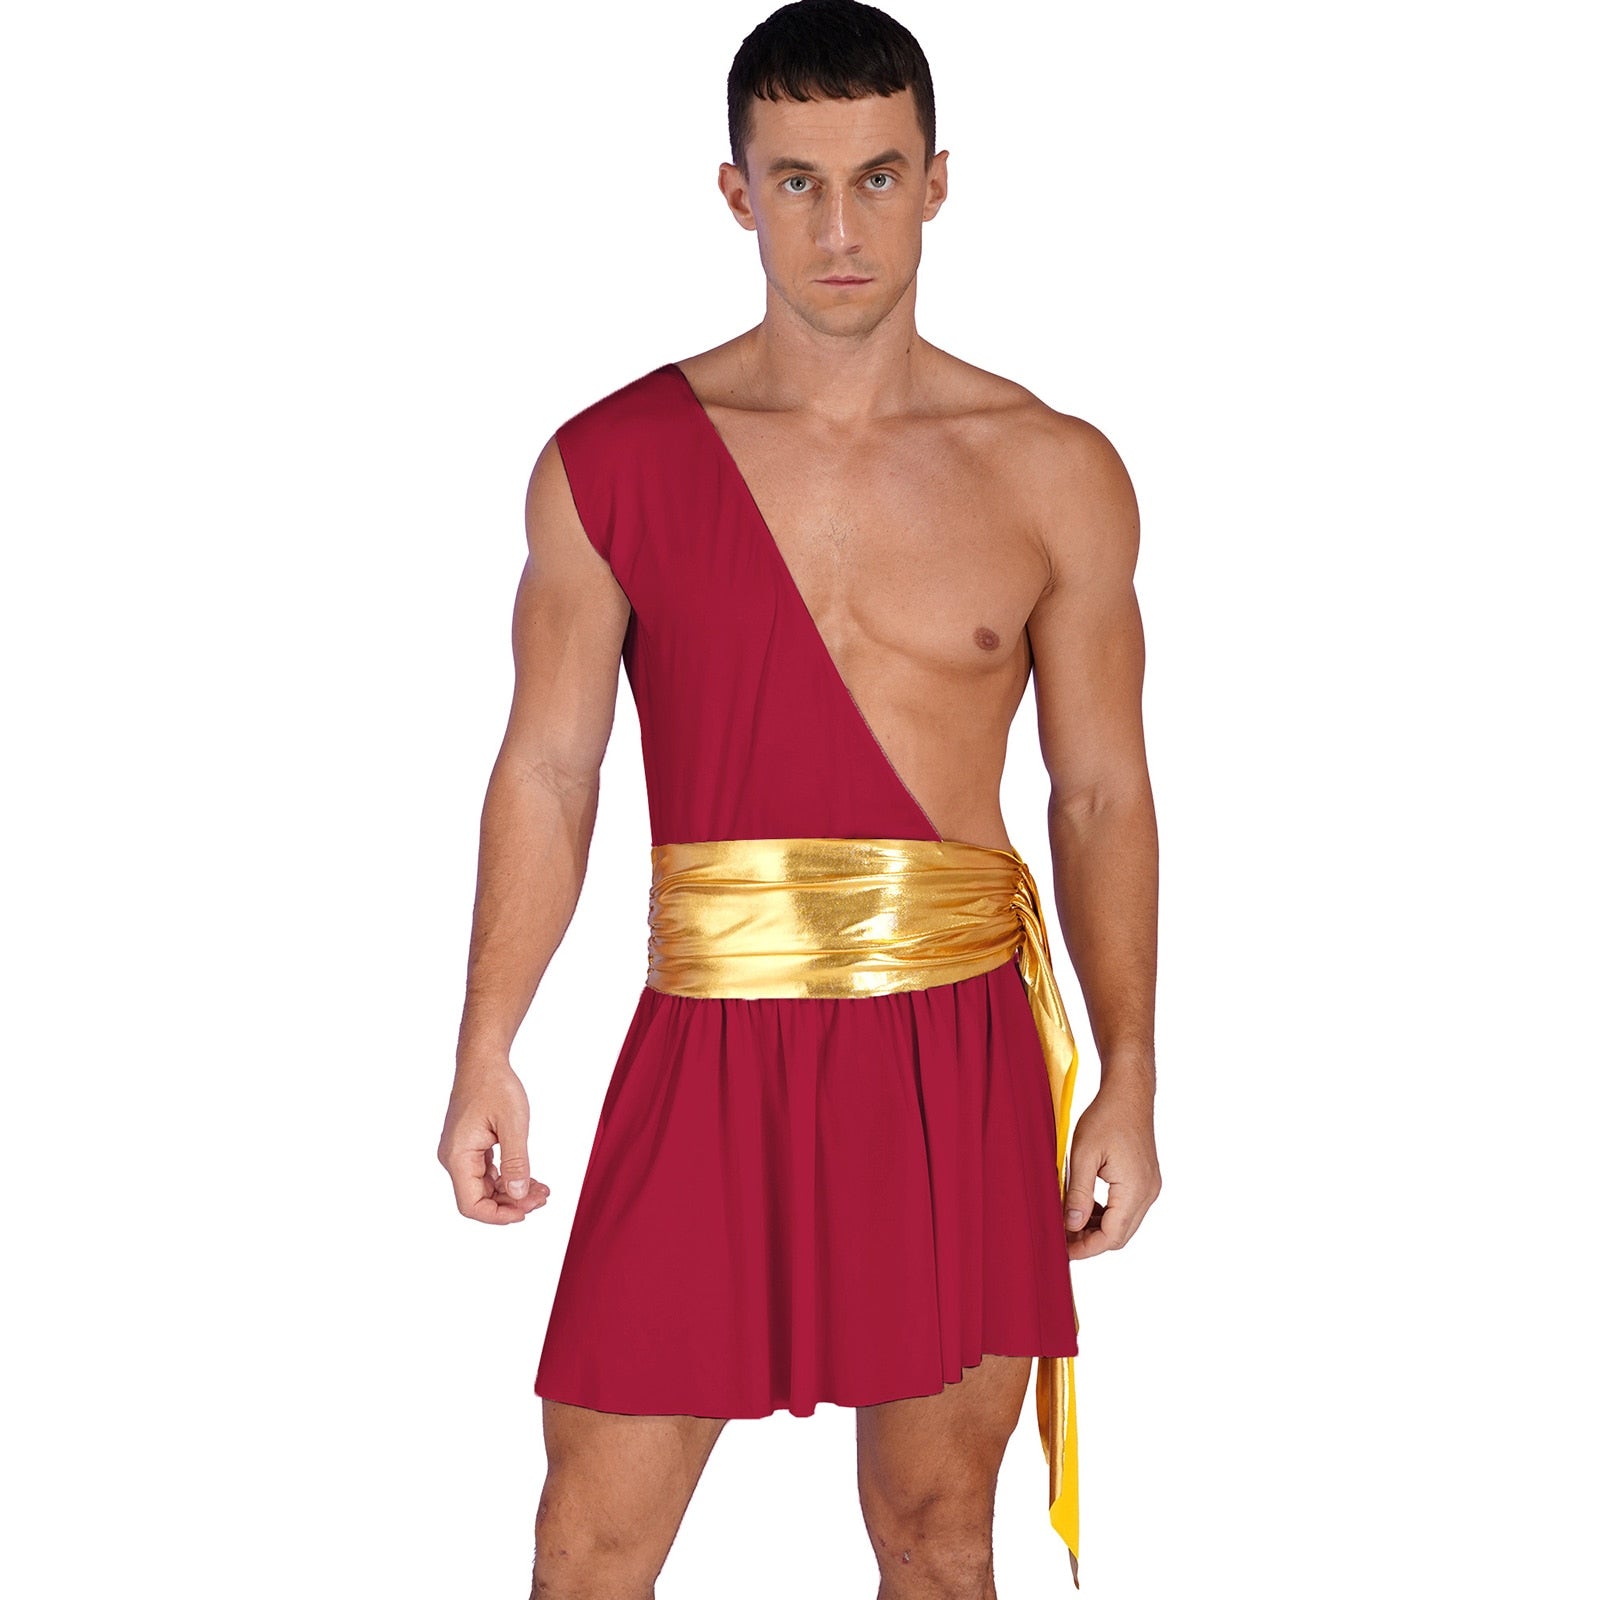 Greek God Costume (12 Colors) S-3XL